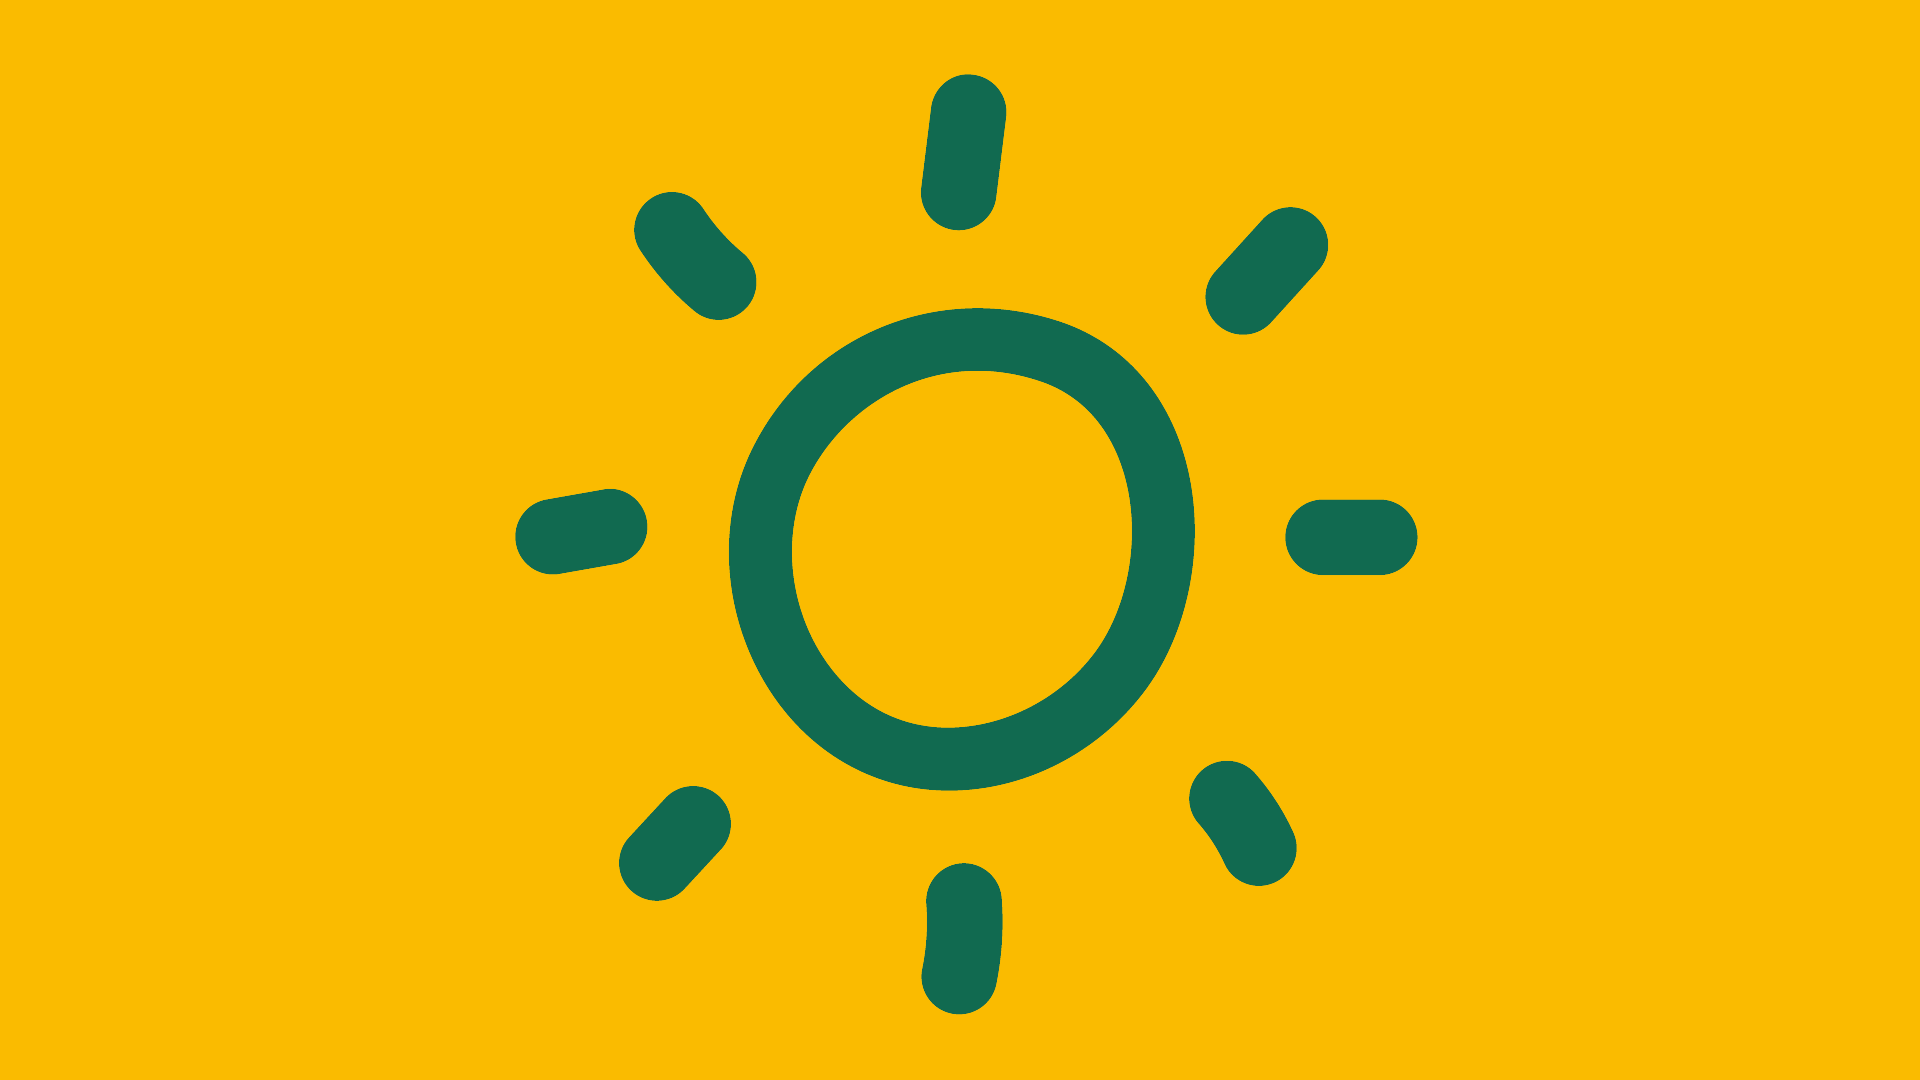 Mit grüner Linie gezeichnete Sonne auf gelbem Grund